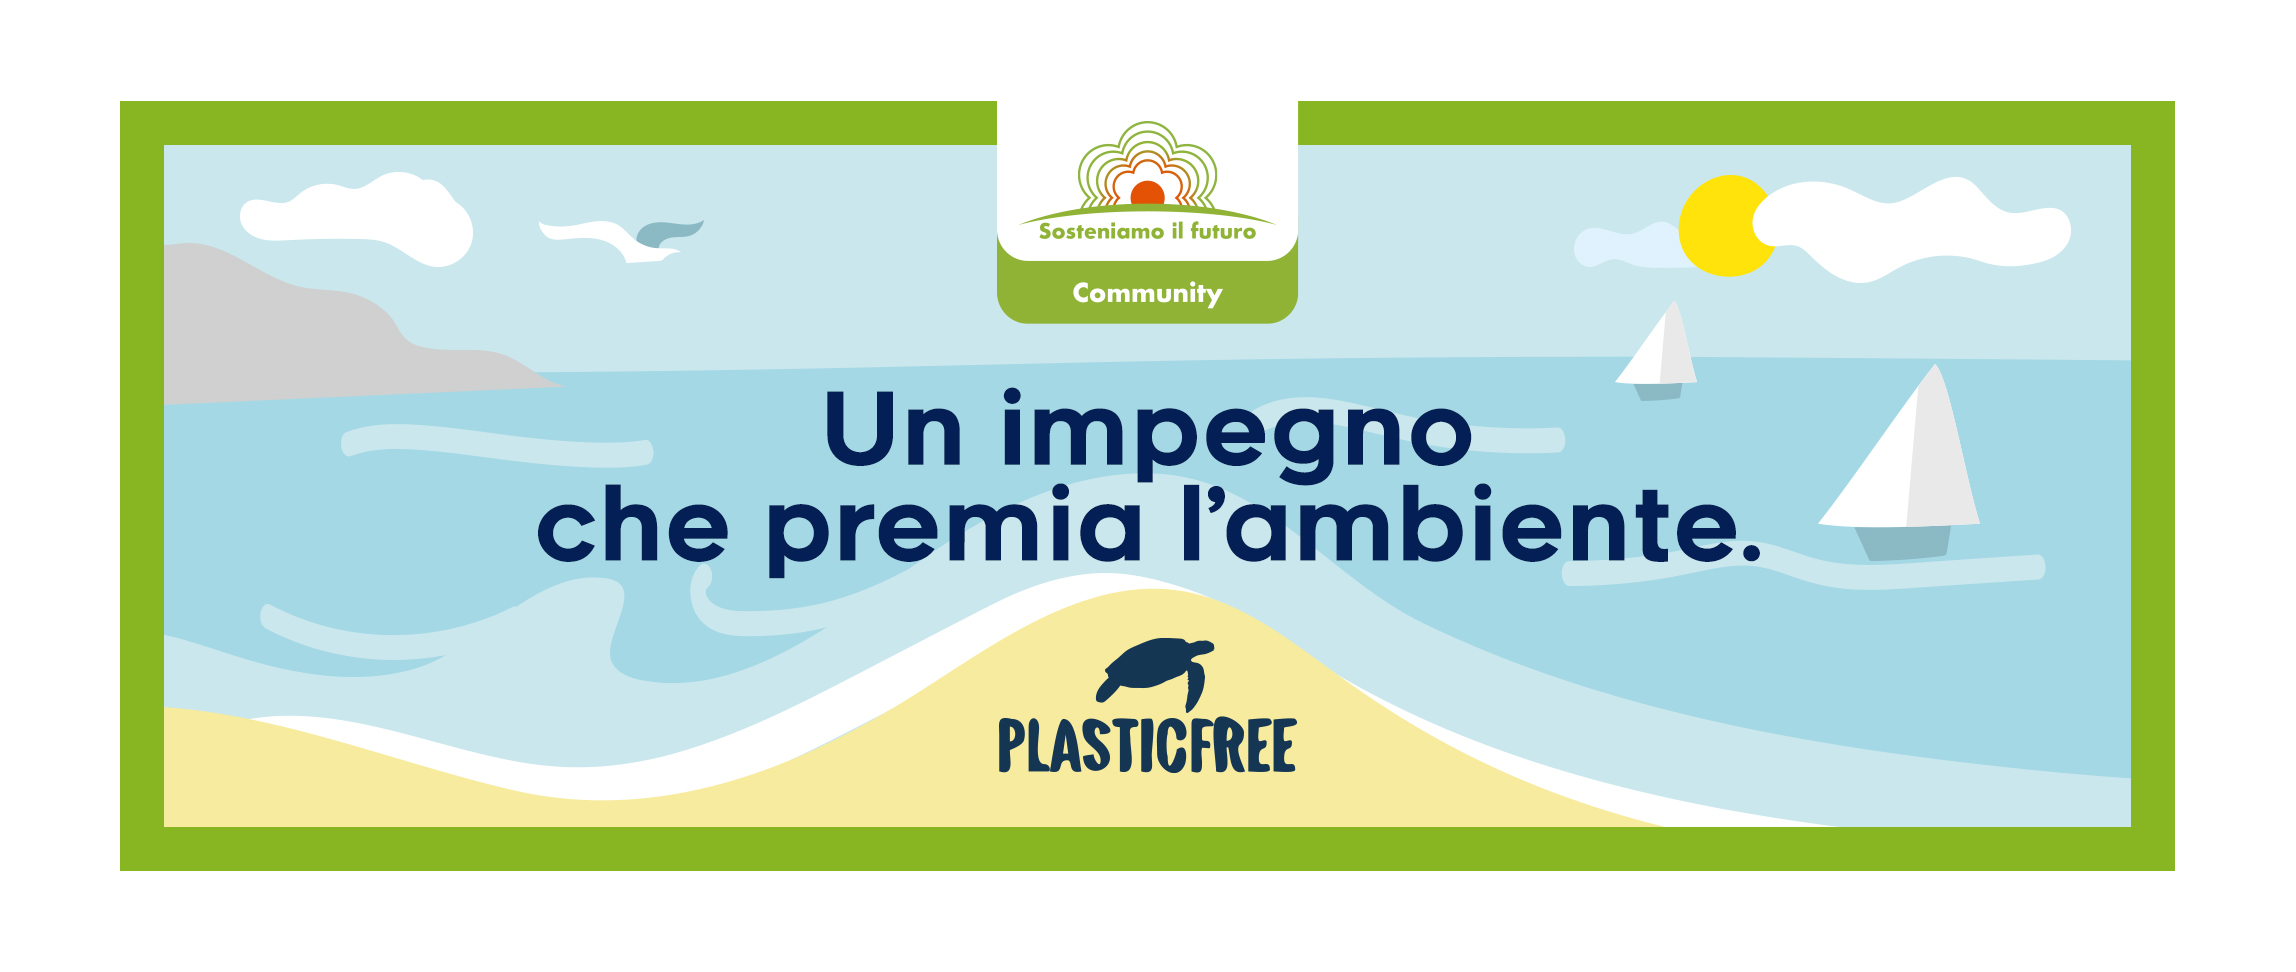 Progetto di pulizia spiagge «Plastic Free» promosso da Conad